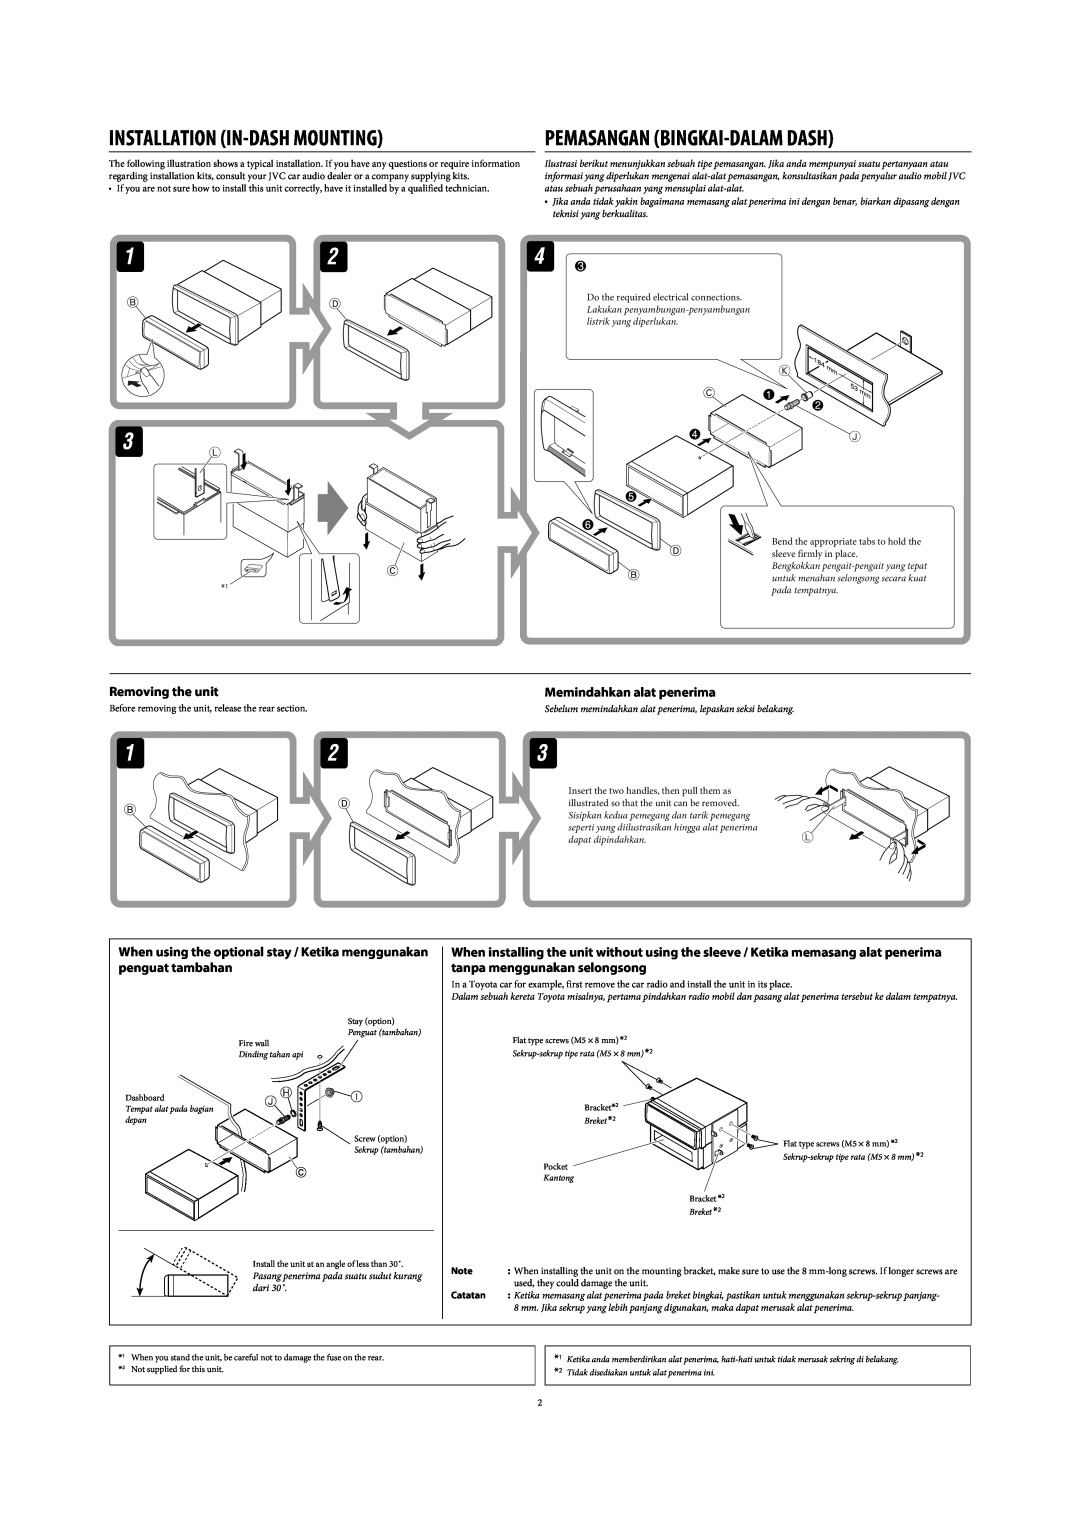 JVC GET0425-001A manual Pemasangan Bingkai-Dalam Dash, Memindahkan alat penerima, Installation In-Dash Mounting, Catatan 